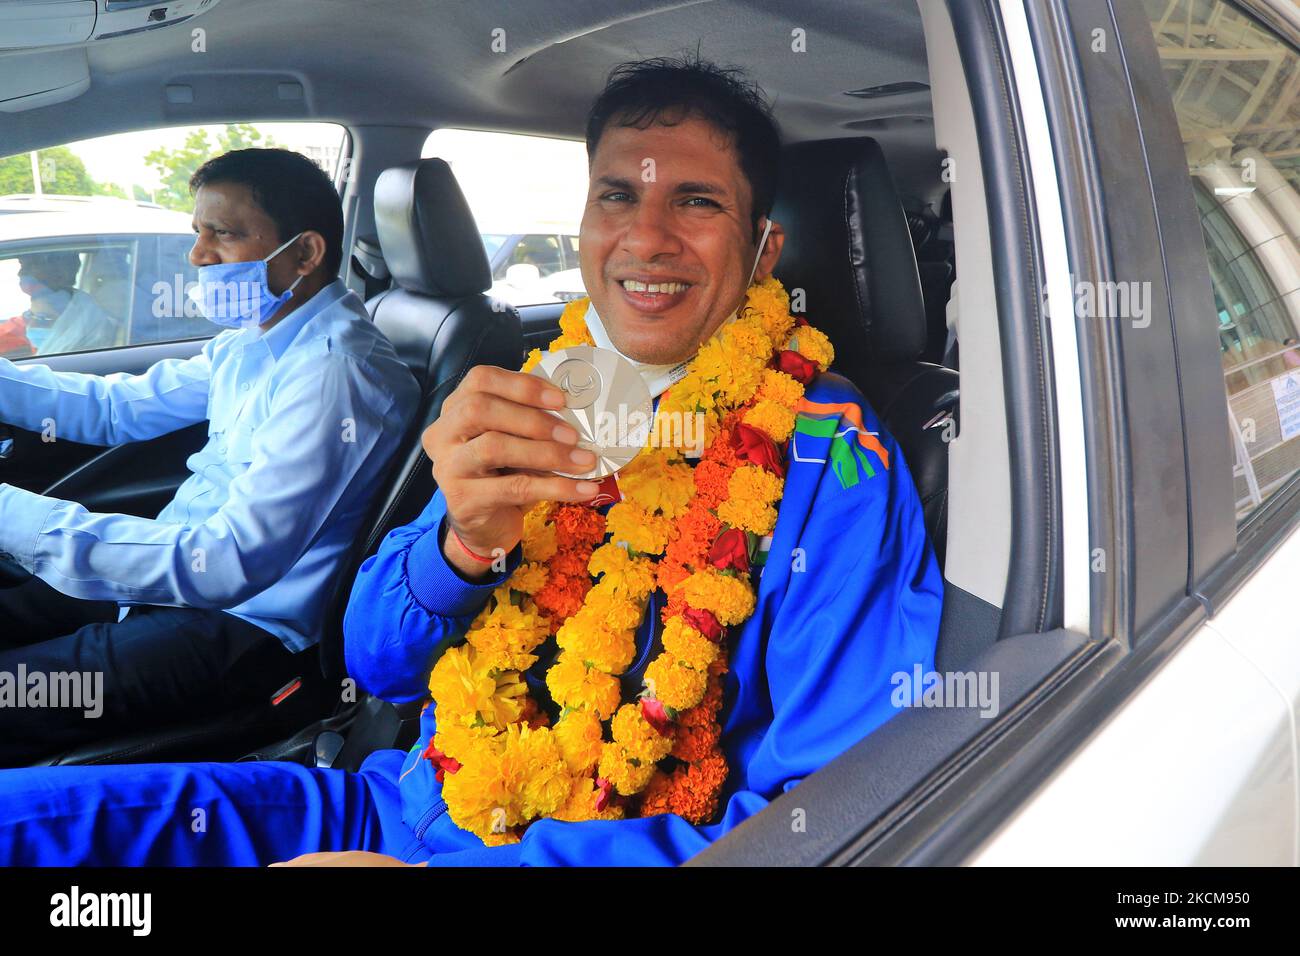 Javelin-Werfer Devendra Jhajharia zeigt seine Silbermedaille, nachdem er in Tokio 2020 Paralympics gewonnen hatte, bei seiner Ankunft in Jaipur, Rajasthan, Indien, Freitag, 10. September 2021. ((Foto von Vishal Bhatnagar/NurPhoto) Stockfoto